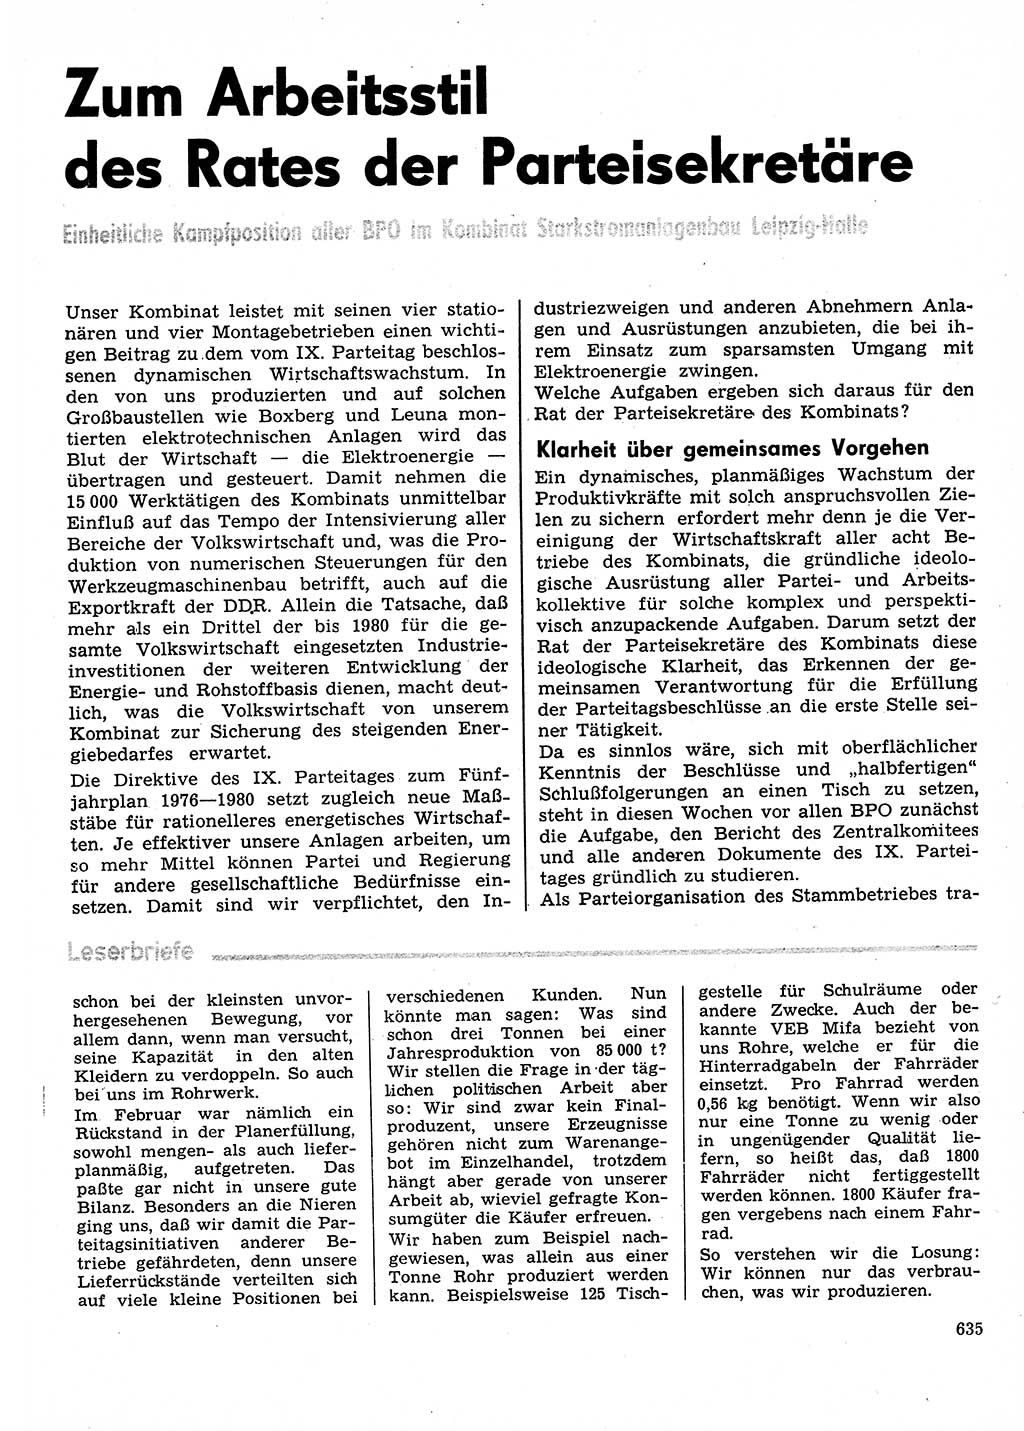 Neuer Weg (NW), Organ des Zentralkomitees (ZK) der SED (Sozialistische Einheitspartei Deutschlands) für Fragen des Parteilebens, 31. Jahrgang [Deutsche Demokratische Republik (DDR)] 1976, Seite 635 (NW ZK SED DDR 1976, S. 635)